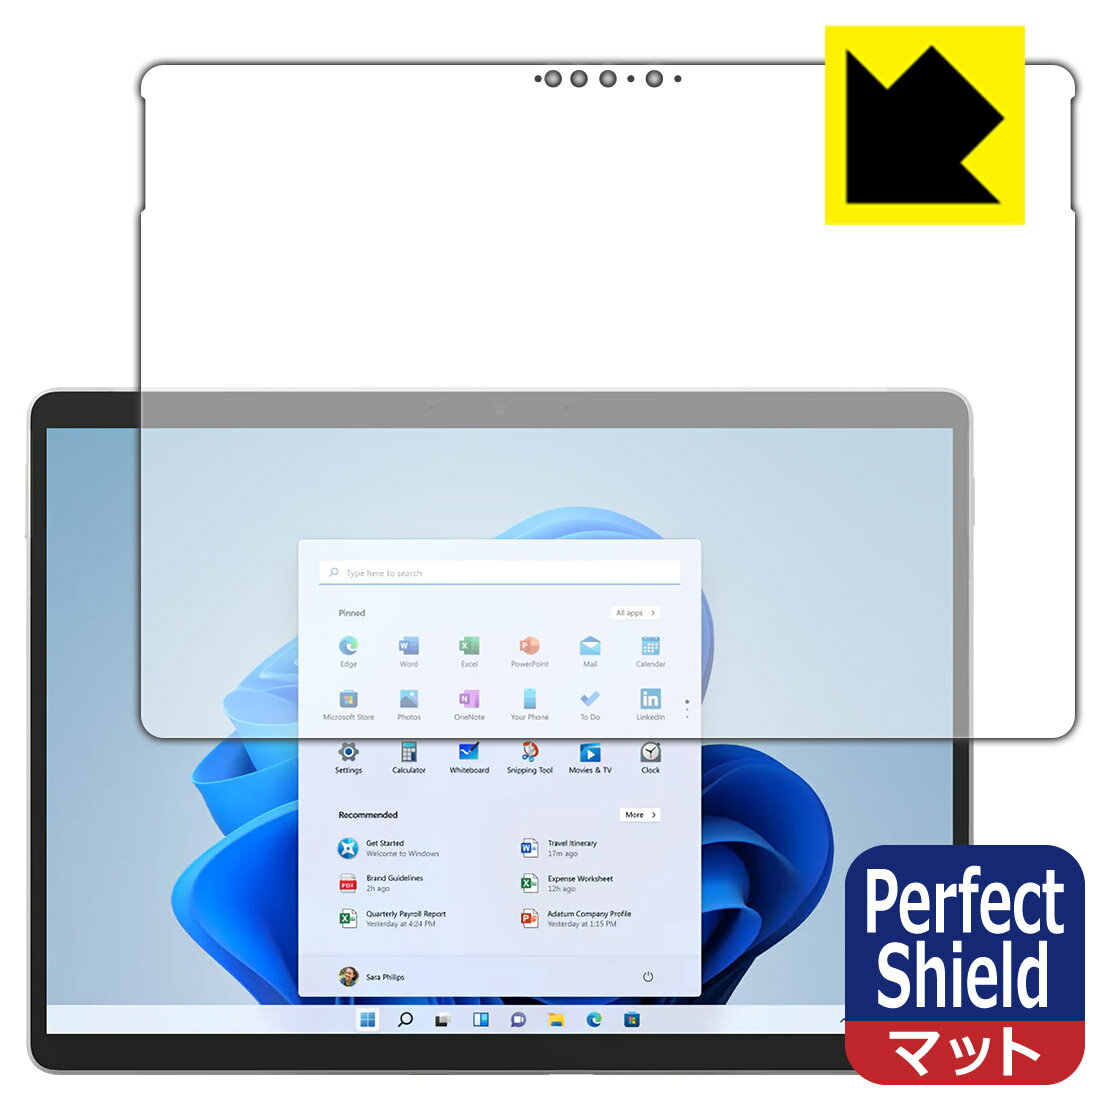 ●対応機種 : Microsoft Surface Pro 8 (2021年11月発売モデル)●製品内容 : 前面用1枚●「Perfect Shield」は画面の反射を抑え、指のすべりもなめらかな指紋や皮脂汚れがつきにくい『アンチグレアタイプ(非光沢)の保護フィルム』●安心の国産素材を使用。日本国内の自社工場で製造し出荷しています。【ポスト投函送料無料】商品は【ポスト投函発送 (追跡可能メール便)】で発送します。お急ぎ、配達日時を指定されたい方は以下のクーポンを同時購入ください。【お急ぎ便クーポン】　プラス110円(税込)で速達扱いでの発送。お届けはポストへの投函となります。【配達日時指定クーポン】　プラス550円(税込)で配達日時を指定し、宅配便で発送させていただきます。【お急ぎ便クーポン】はこちらをクリック【配達日時指定クーポン】はこちらをクリック 　 表面に微細な凹凸を作ることにより、外光を乱反射させギラツキを抑える「アンチグレア加工」がされております。 屋外での太陽光の映り込み、屋内でも蛍光灯などの映り込みが気になるシーンが多い方におすすめです。 また、指紋がついた場合でも目立ちにくいという特長があります。 指滑りはさらさらな使用感でストレスのない操作・入力が可能です。 ハードコート加工がされており、キズや擦れに強くなっています。簡単にキズがつかず長くご利用いただけます。 反射防止のアンチグレア加工で指紋が目立ちにくい上、表面は防汚コーティングがされており、皮脂や汚れがつきにくく、また、落ちやすくなっています。 接着面は気泡の入りにくい特殊な自己吸着タイプです。素材に柔軟性があり、貼り付け作業も簡単にできます。また、はがすときにガラス製フィルムのように割れてしまうことはありません。 貼り直しが何度でもできるので、正しい位置へ貼り付けられるまでやり直すことができます。 最高級グレードの国産素材を日本国内の弊社工場で加工している完全な Made in Japan です。安心の品質をお届けします。 使用上の注意 ●本製品は機器の画面をキズなどから保護するフィルムです。他の目的にはご使用にならないでください。 ●本製品は液晶保護および機器本体を完全に保護することを保証するものではありません。機器の破損、損傷、故障、その他損害につきましては一切の責任を負いかねます。 ●製品の性質上、画面操作の反応が変化したり、表示等が変化して見える場合がございます。 ●貼り付け作業時の失敗(位置ズレ、汚れ、ゆがみ、折れ、気泡など)および取り外し作業時の破損、損傷などについては、一切の責任を負いかねます。 ●水に濡れた状態でのご使用は吸着力の低下などにより、保護フィルムがはがれてしまう場合がございます。防水対応の機器でご使用の場合はご注意ください。 ●アルコール類やその他薬剤を本製品に付着させないでください。表面のコーティングや吸着面が変質するおそれがあります。 ●品質向上のため、仕様などを予告なく変更する場合がございますので、予めご了承ください。